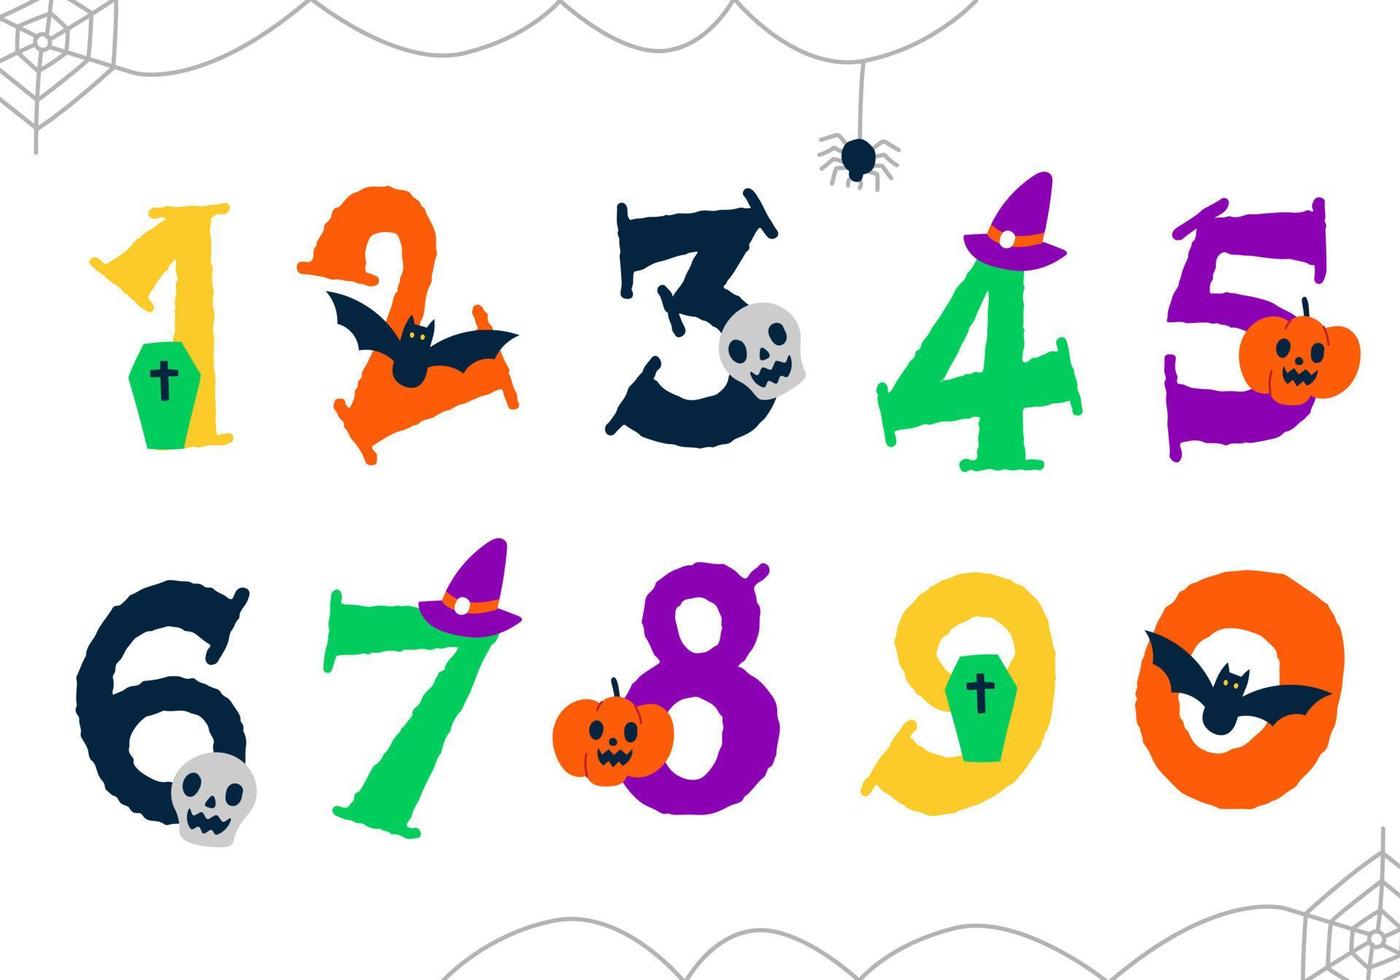 niedliche bunte hand zeichnen karikatur gespenstische glückliche halloween-feiertagsfeier gespenstische horrorelemente handgeschriebene hand gezeichnete englische nummer numerische zahl schriftdesign kinder kinder lokalisierte vektorillustration vektor